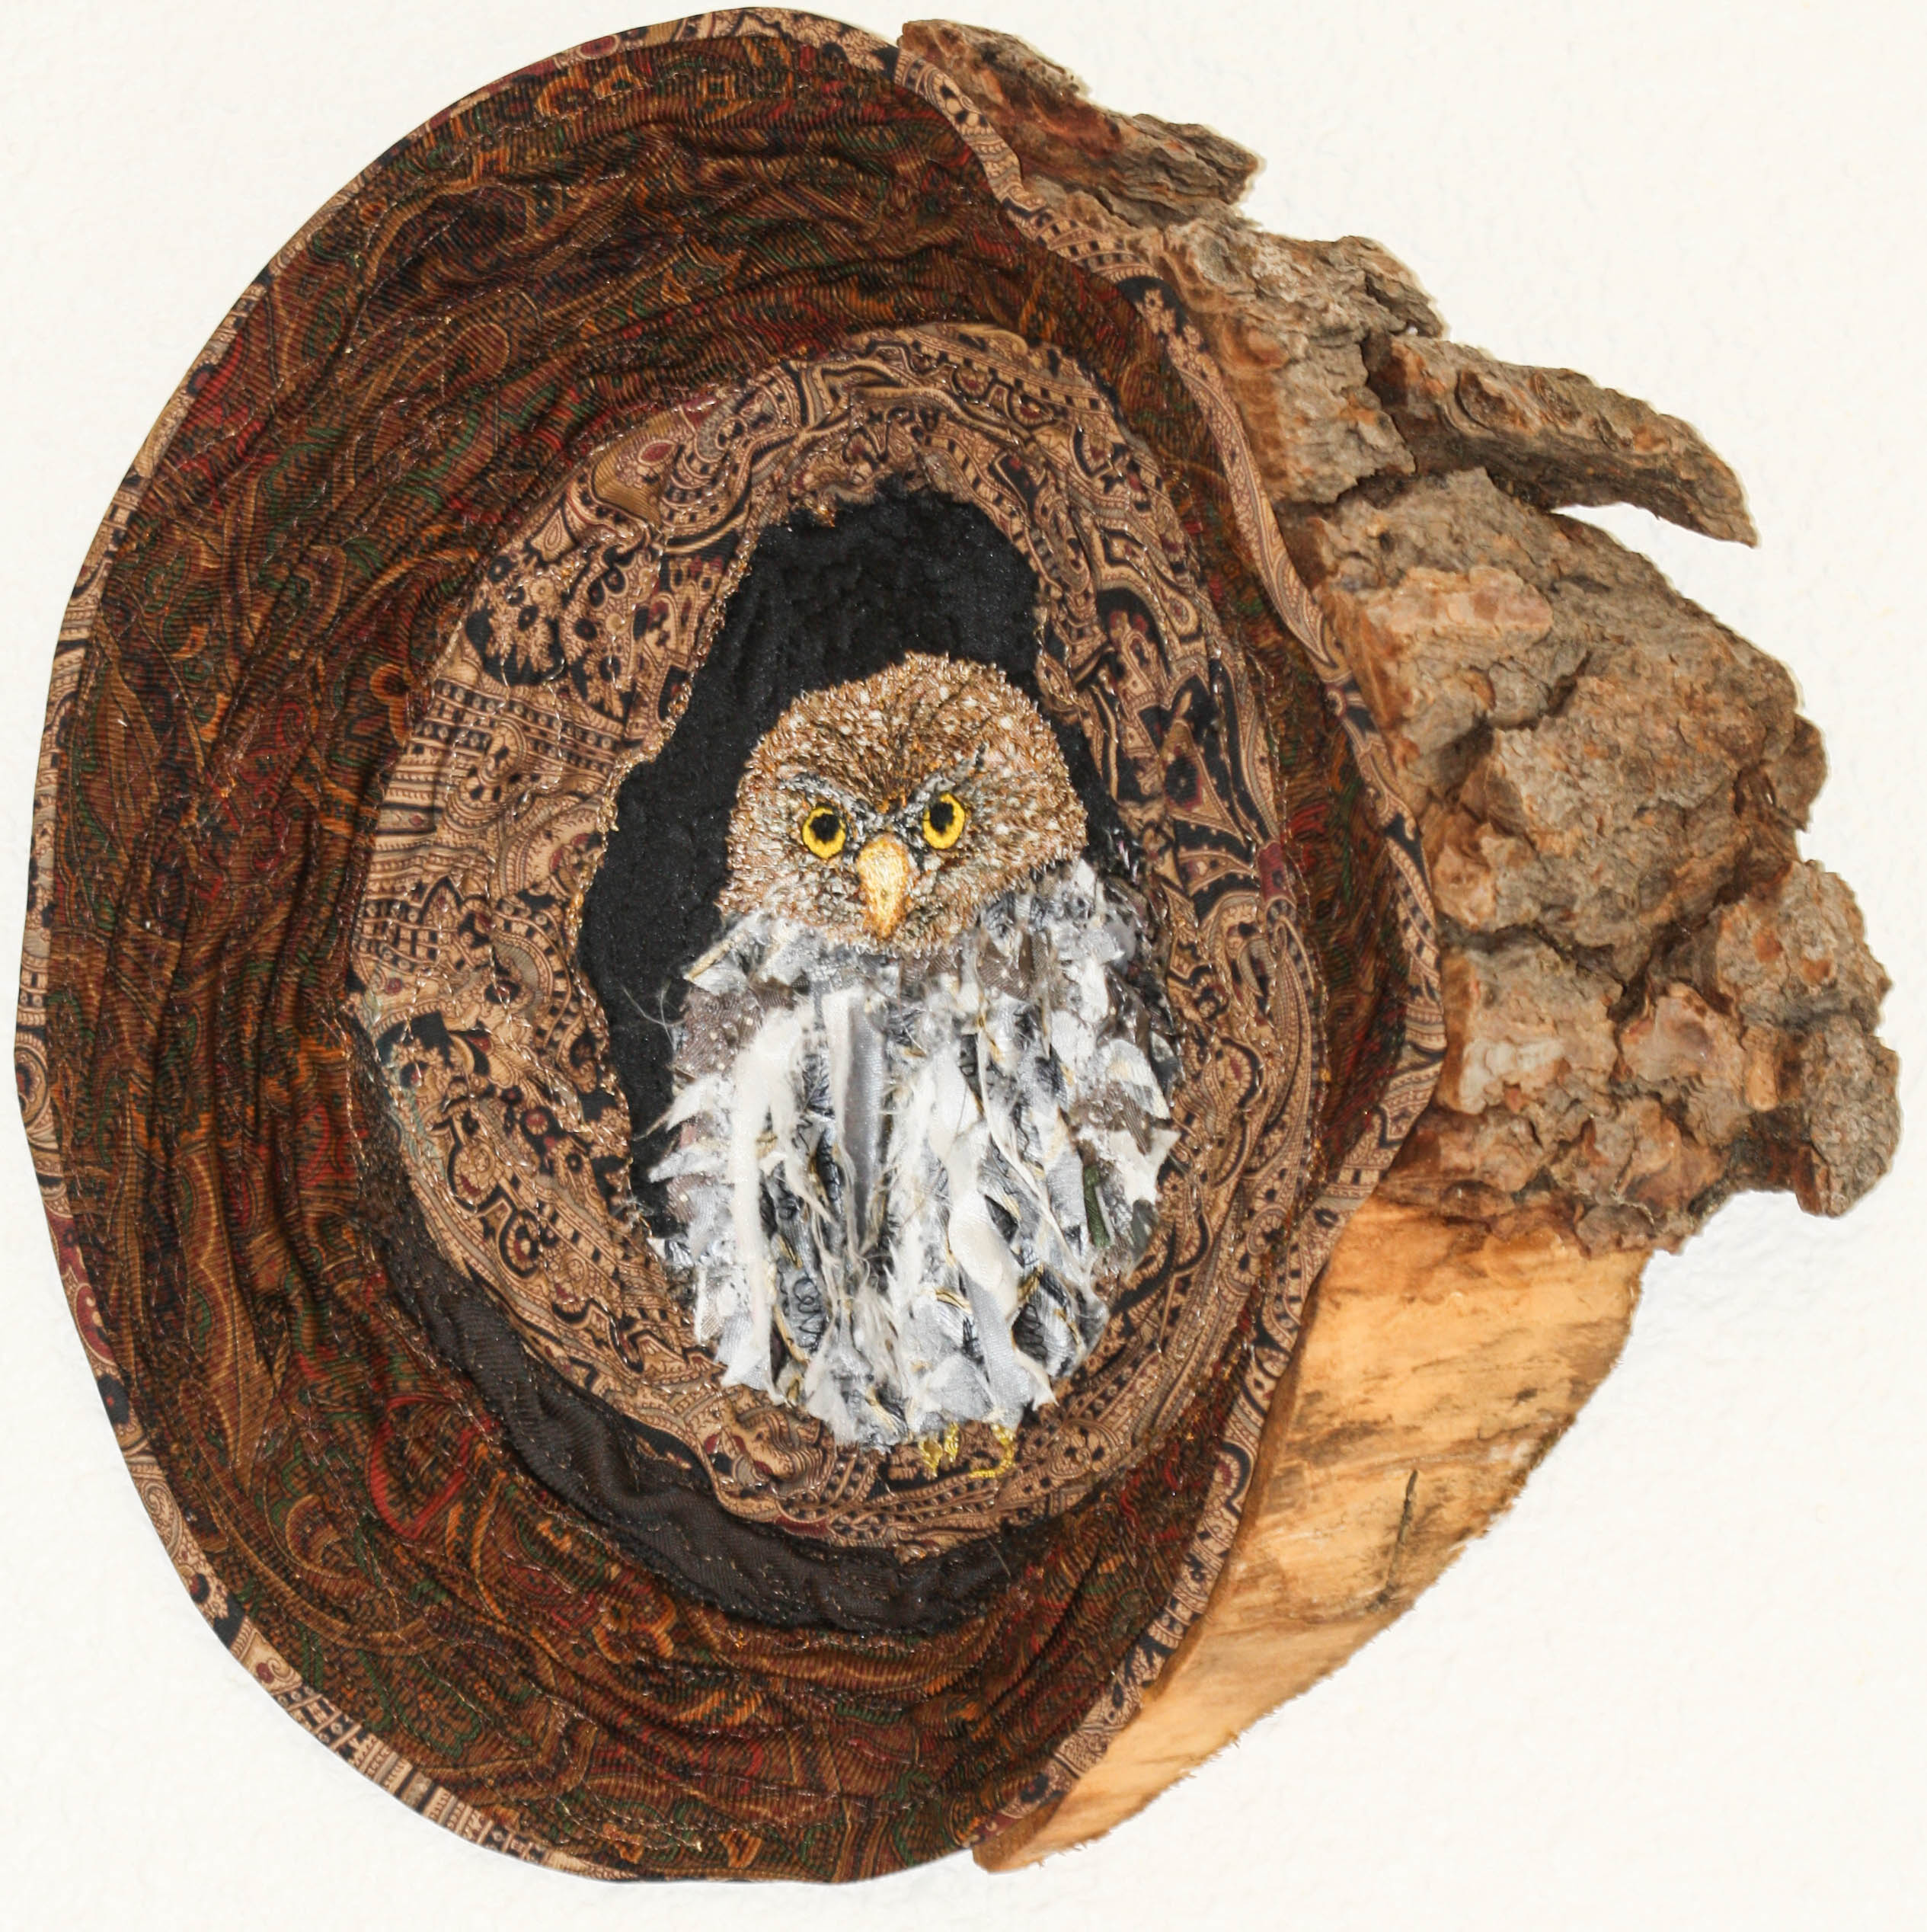 Pygmy Owl in Log